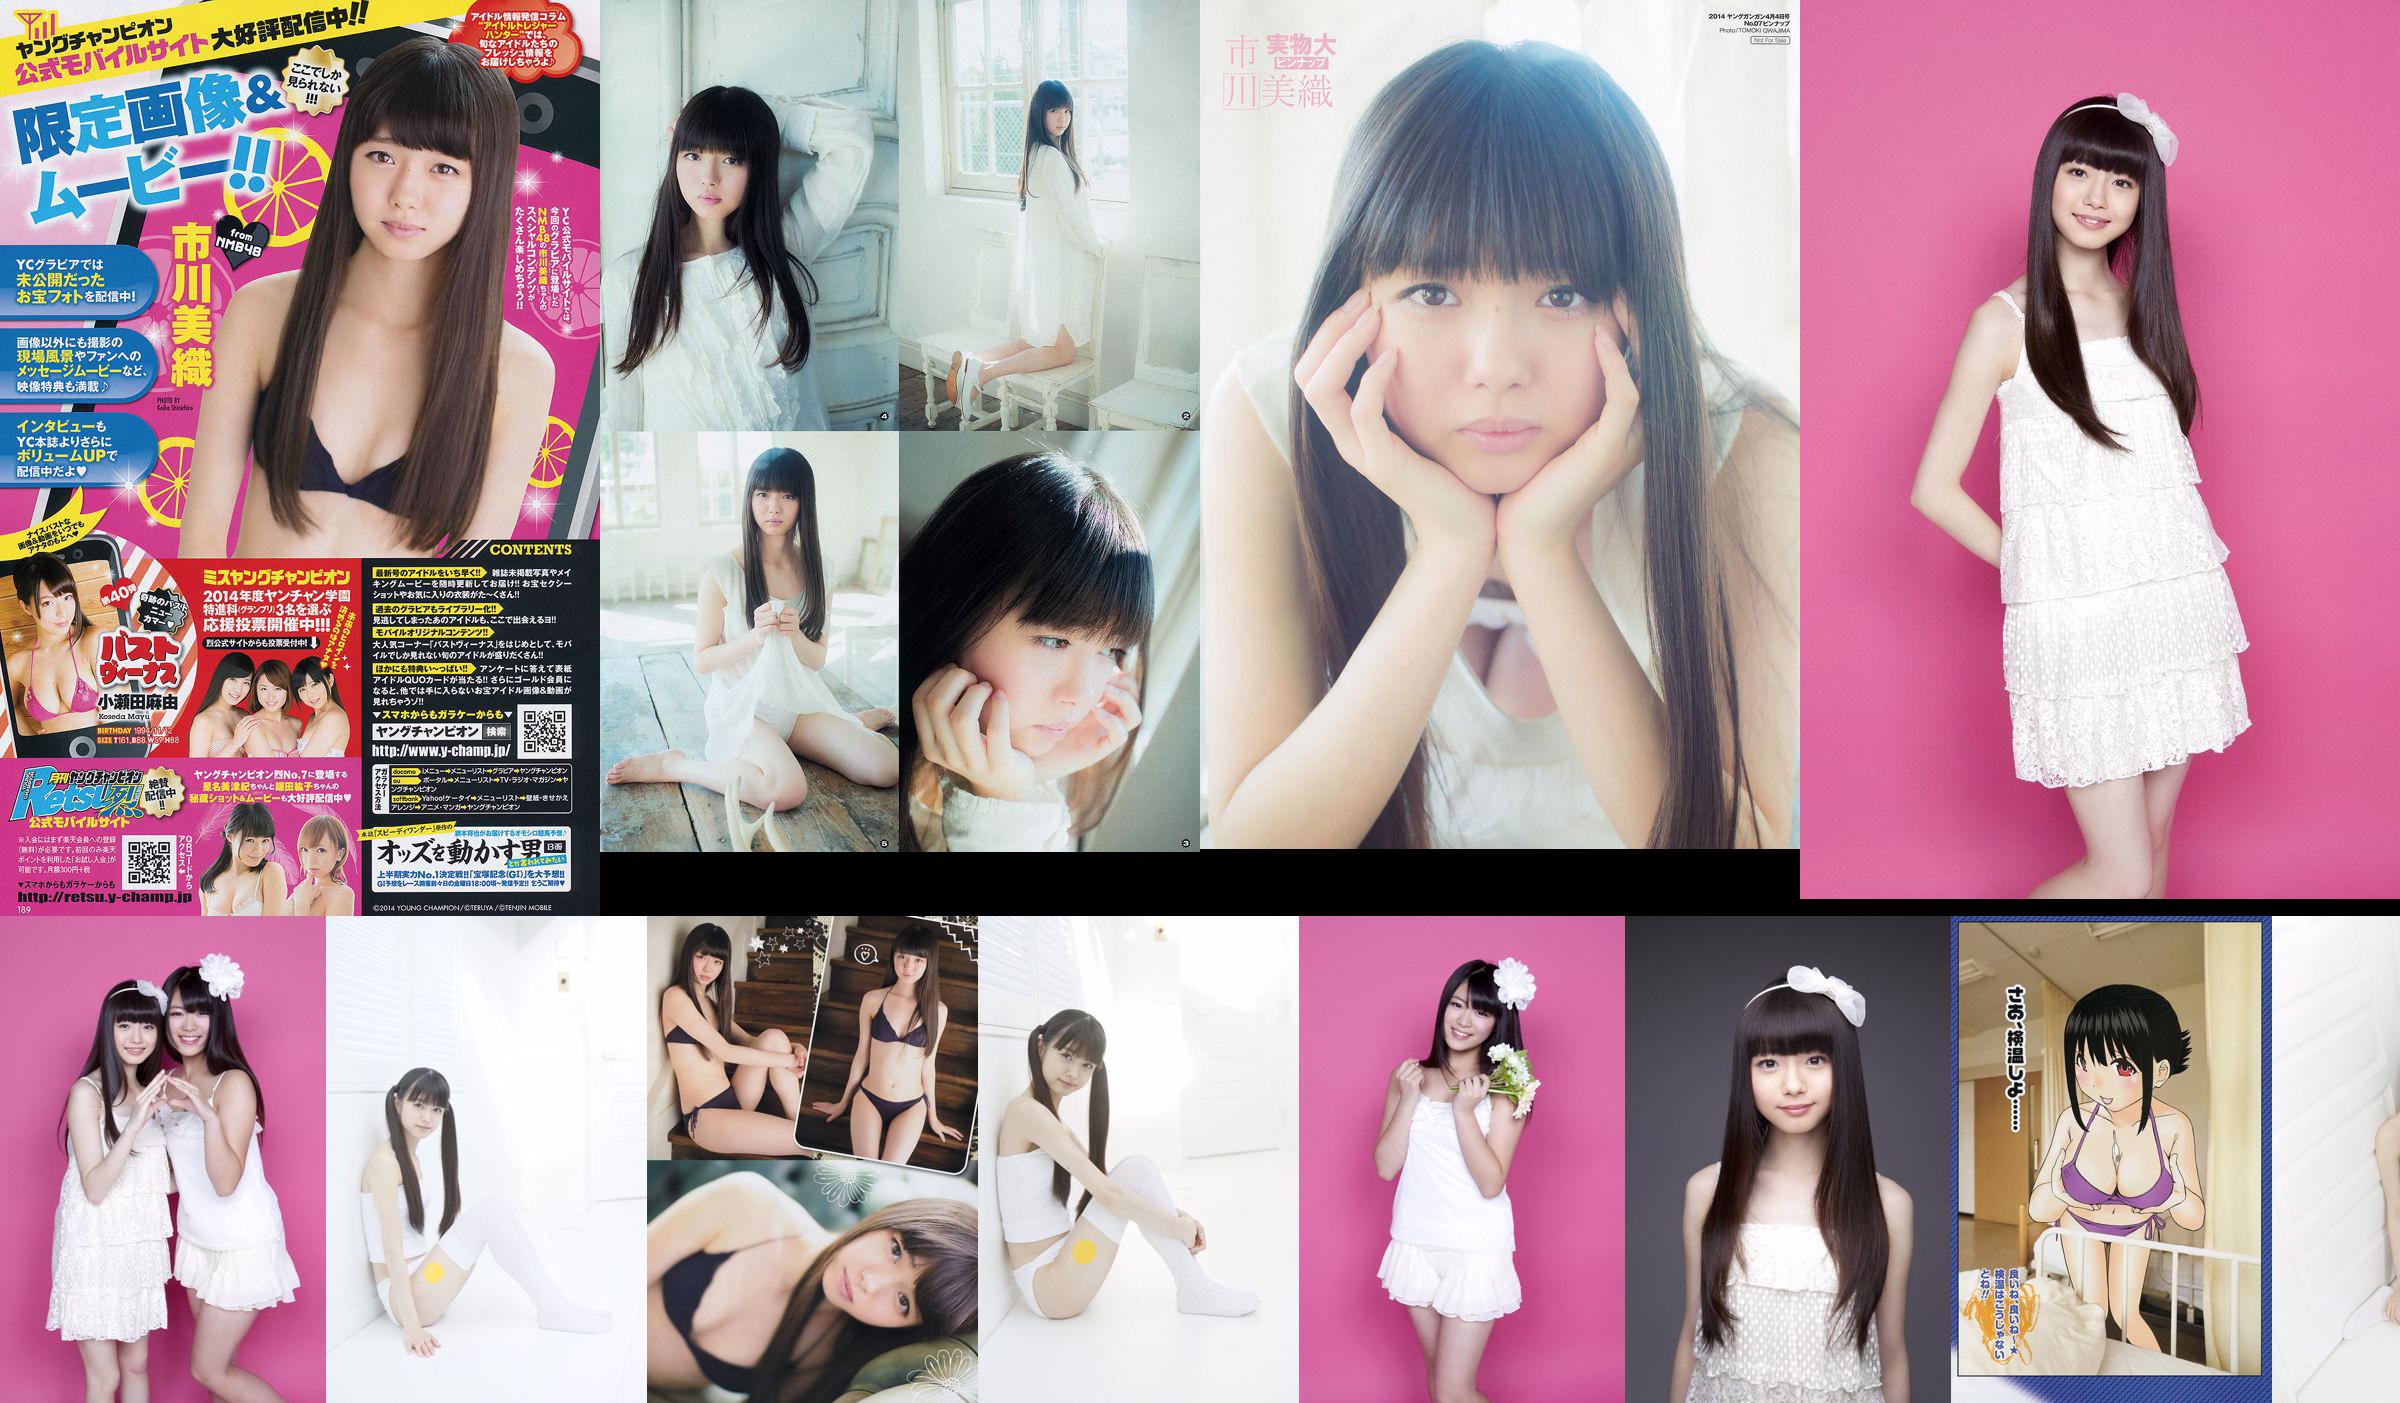 Yamauchi Suzuran/Ichikawa Miori "AKB48ネクストガールズ第2弾" [YS Web] Vol.394 No.ba45d7 Page 3